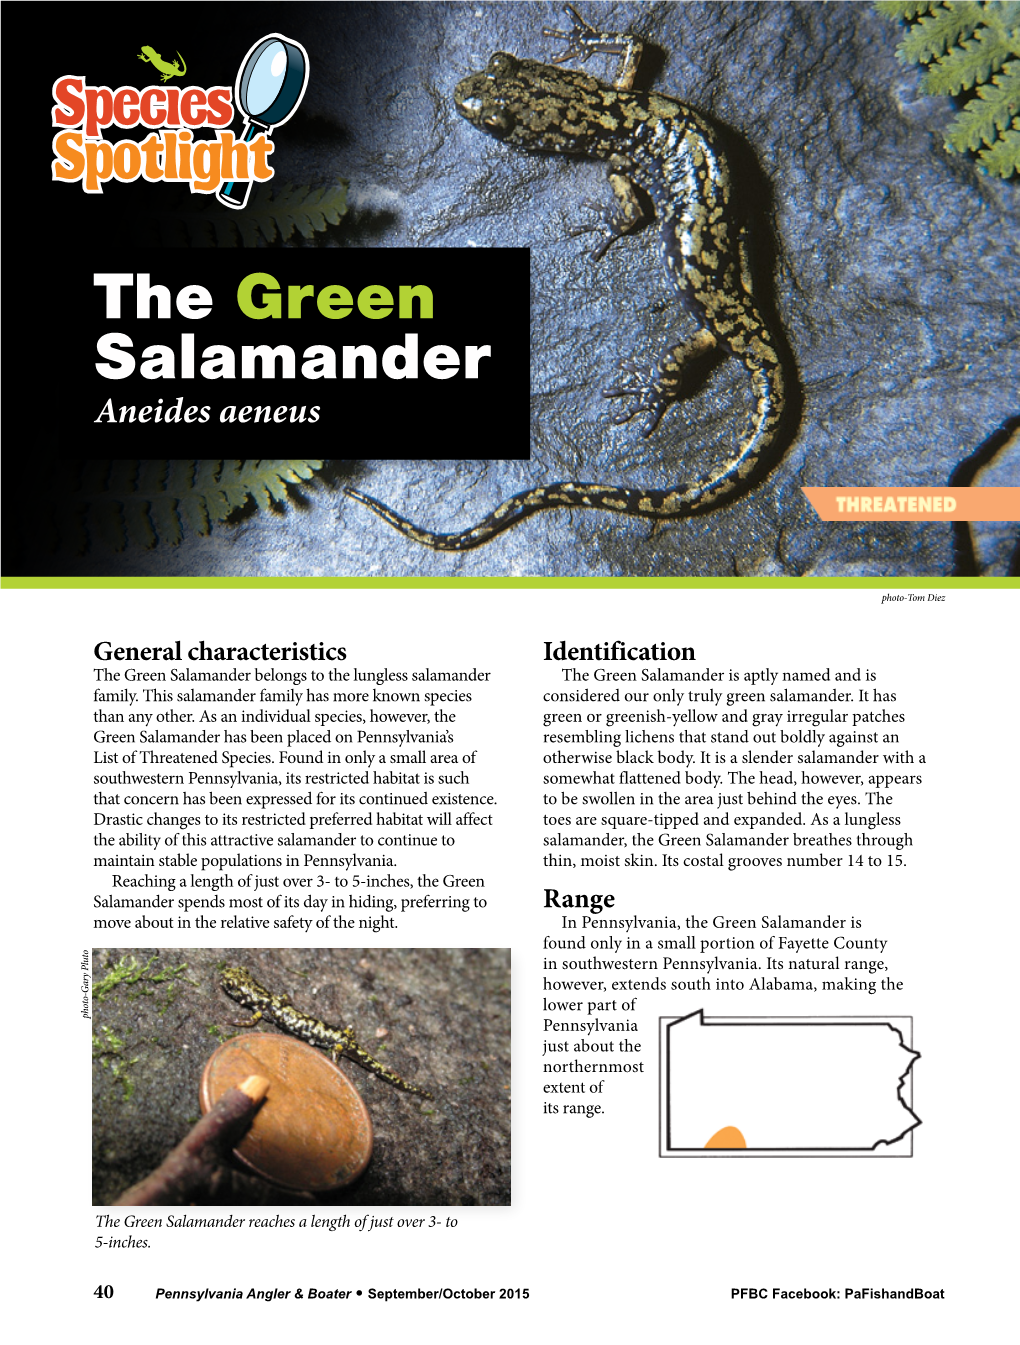 The Green Salamander Aneides Aeneus